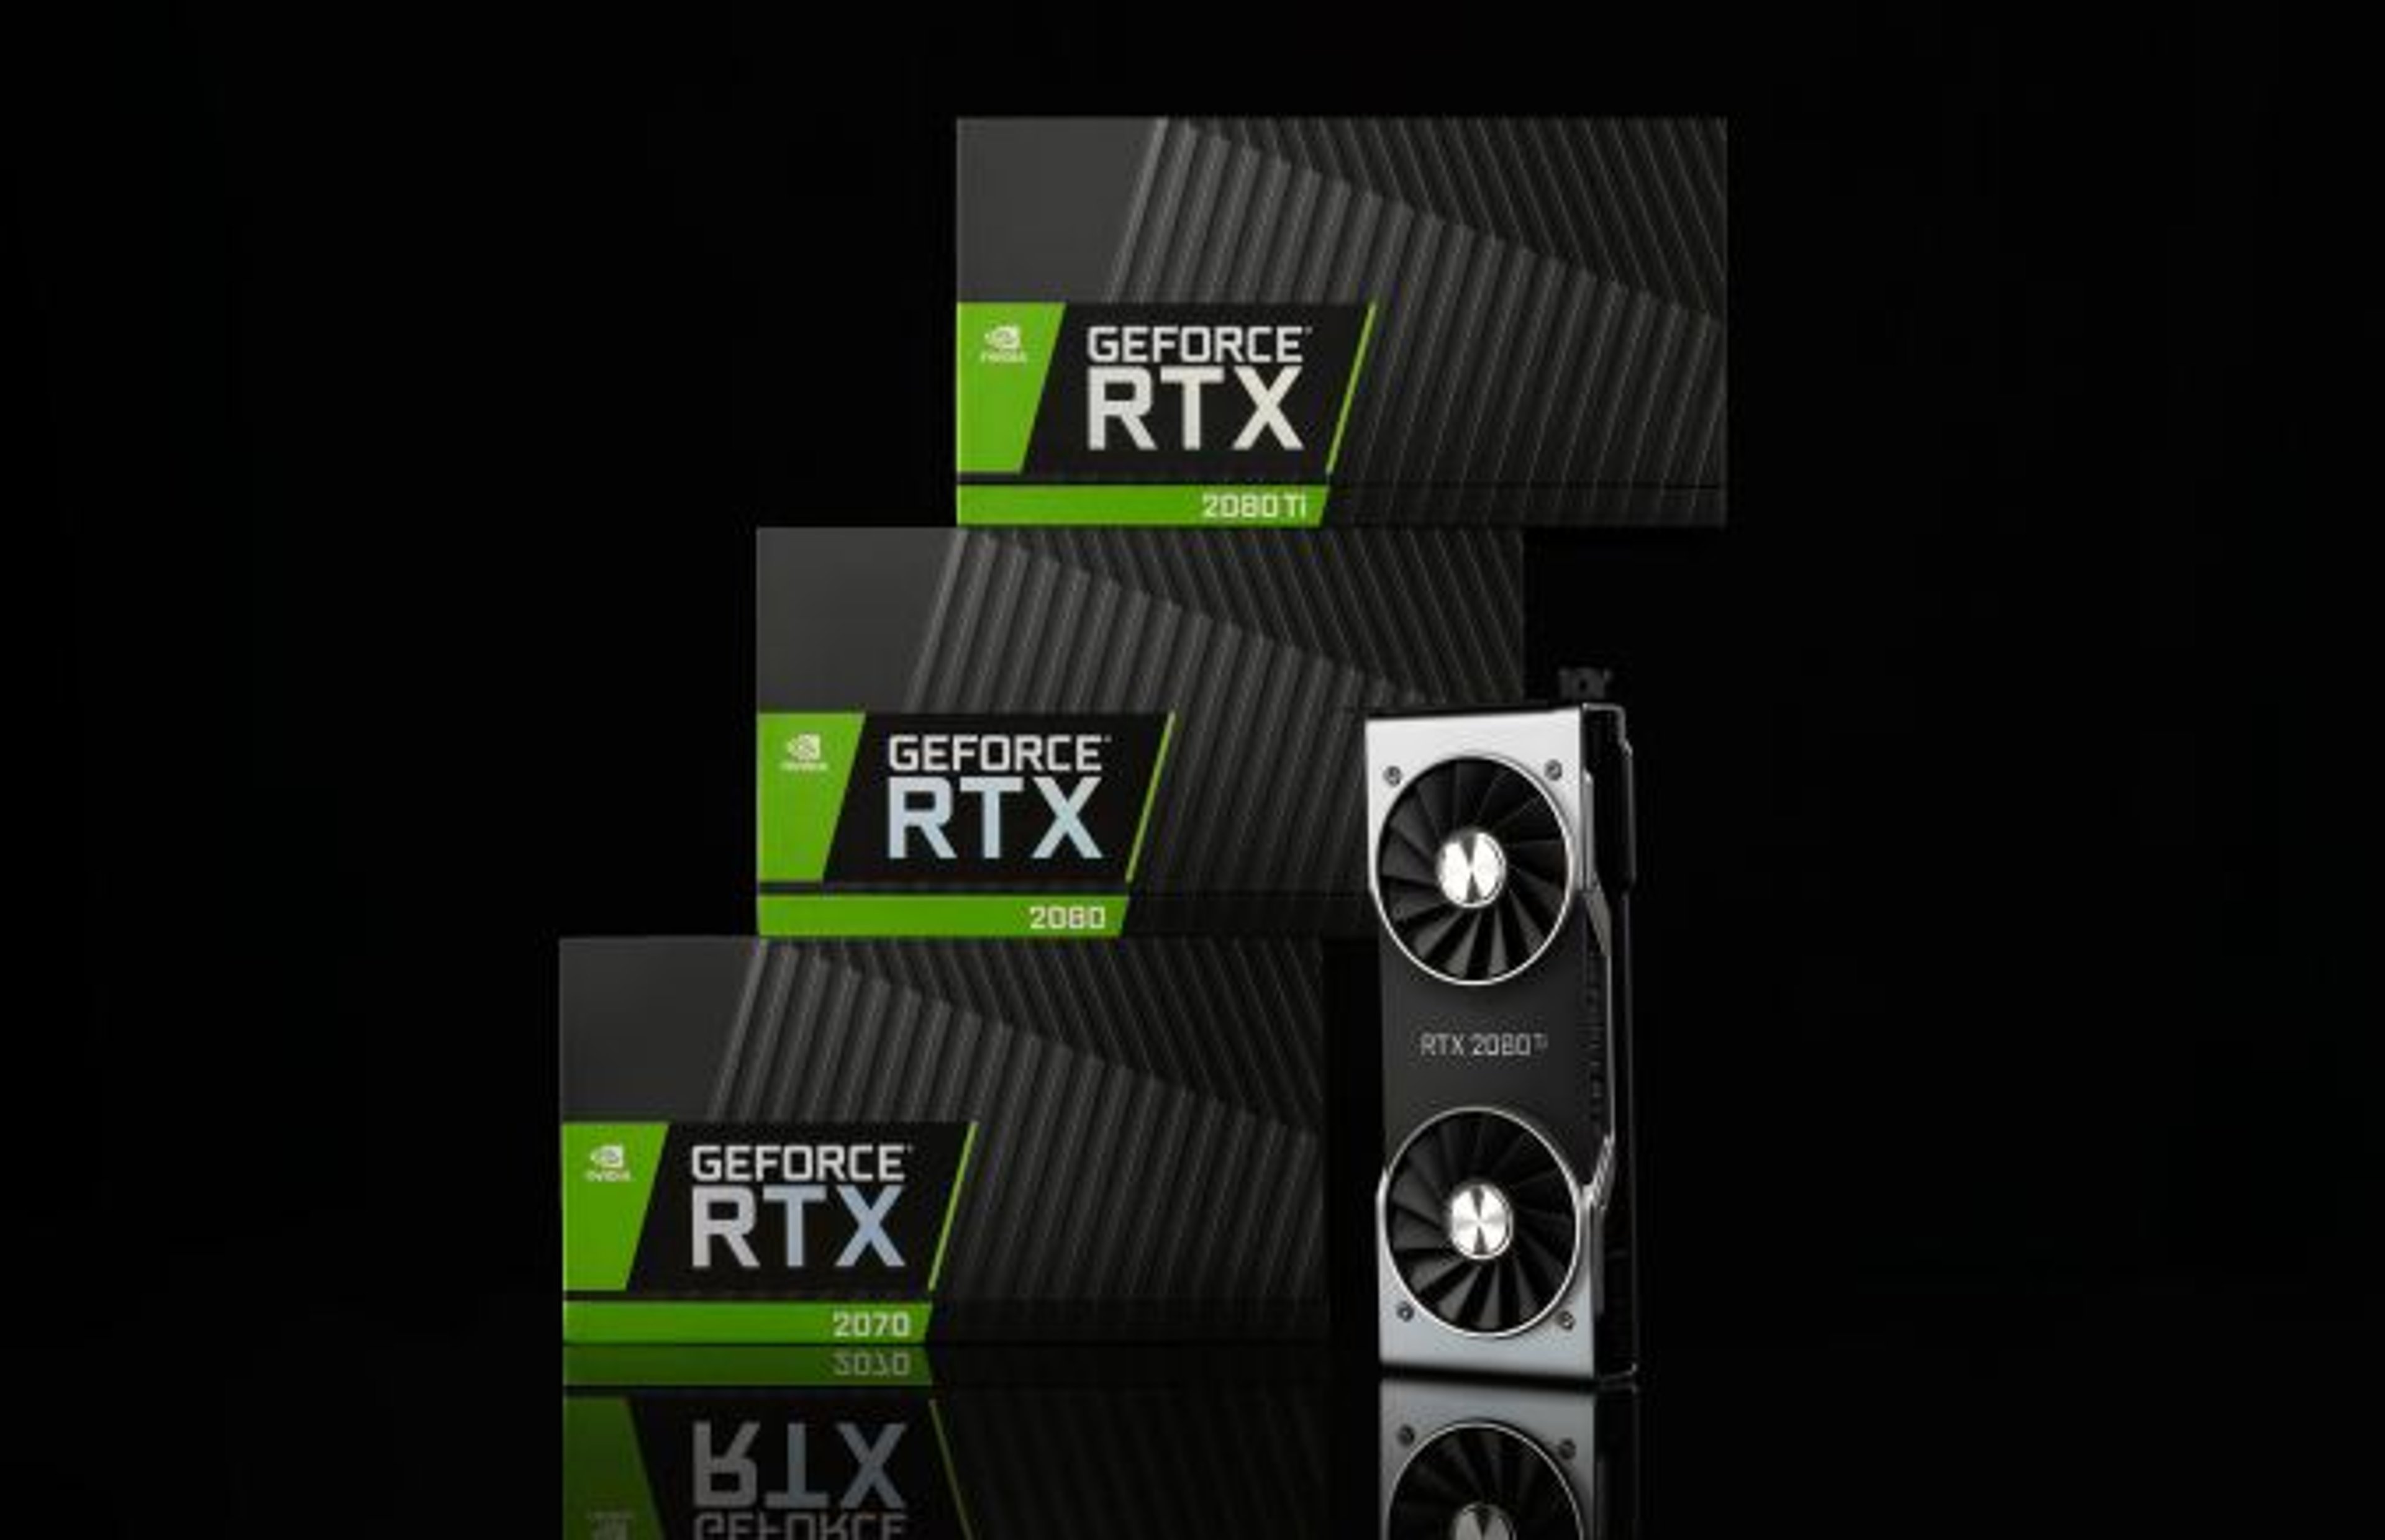 Nvidia RTX: nuove schede grafiche sempre più potenti e performanti. Cover